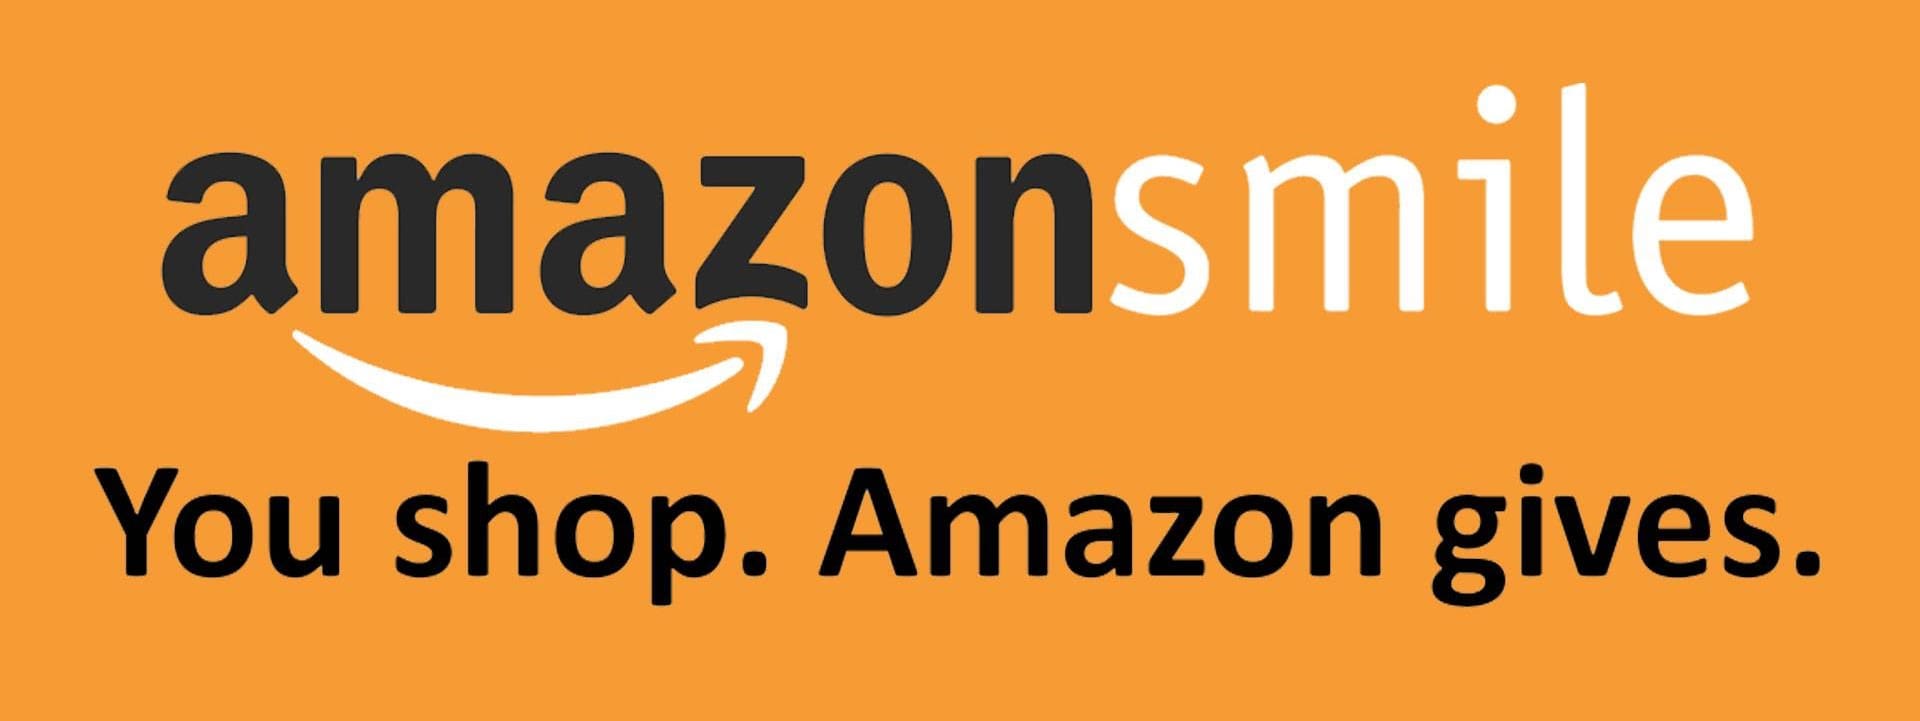 Amazon logo and caption.